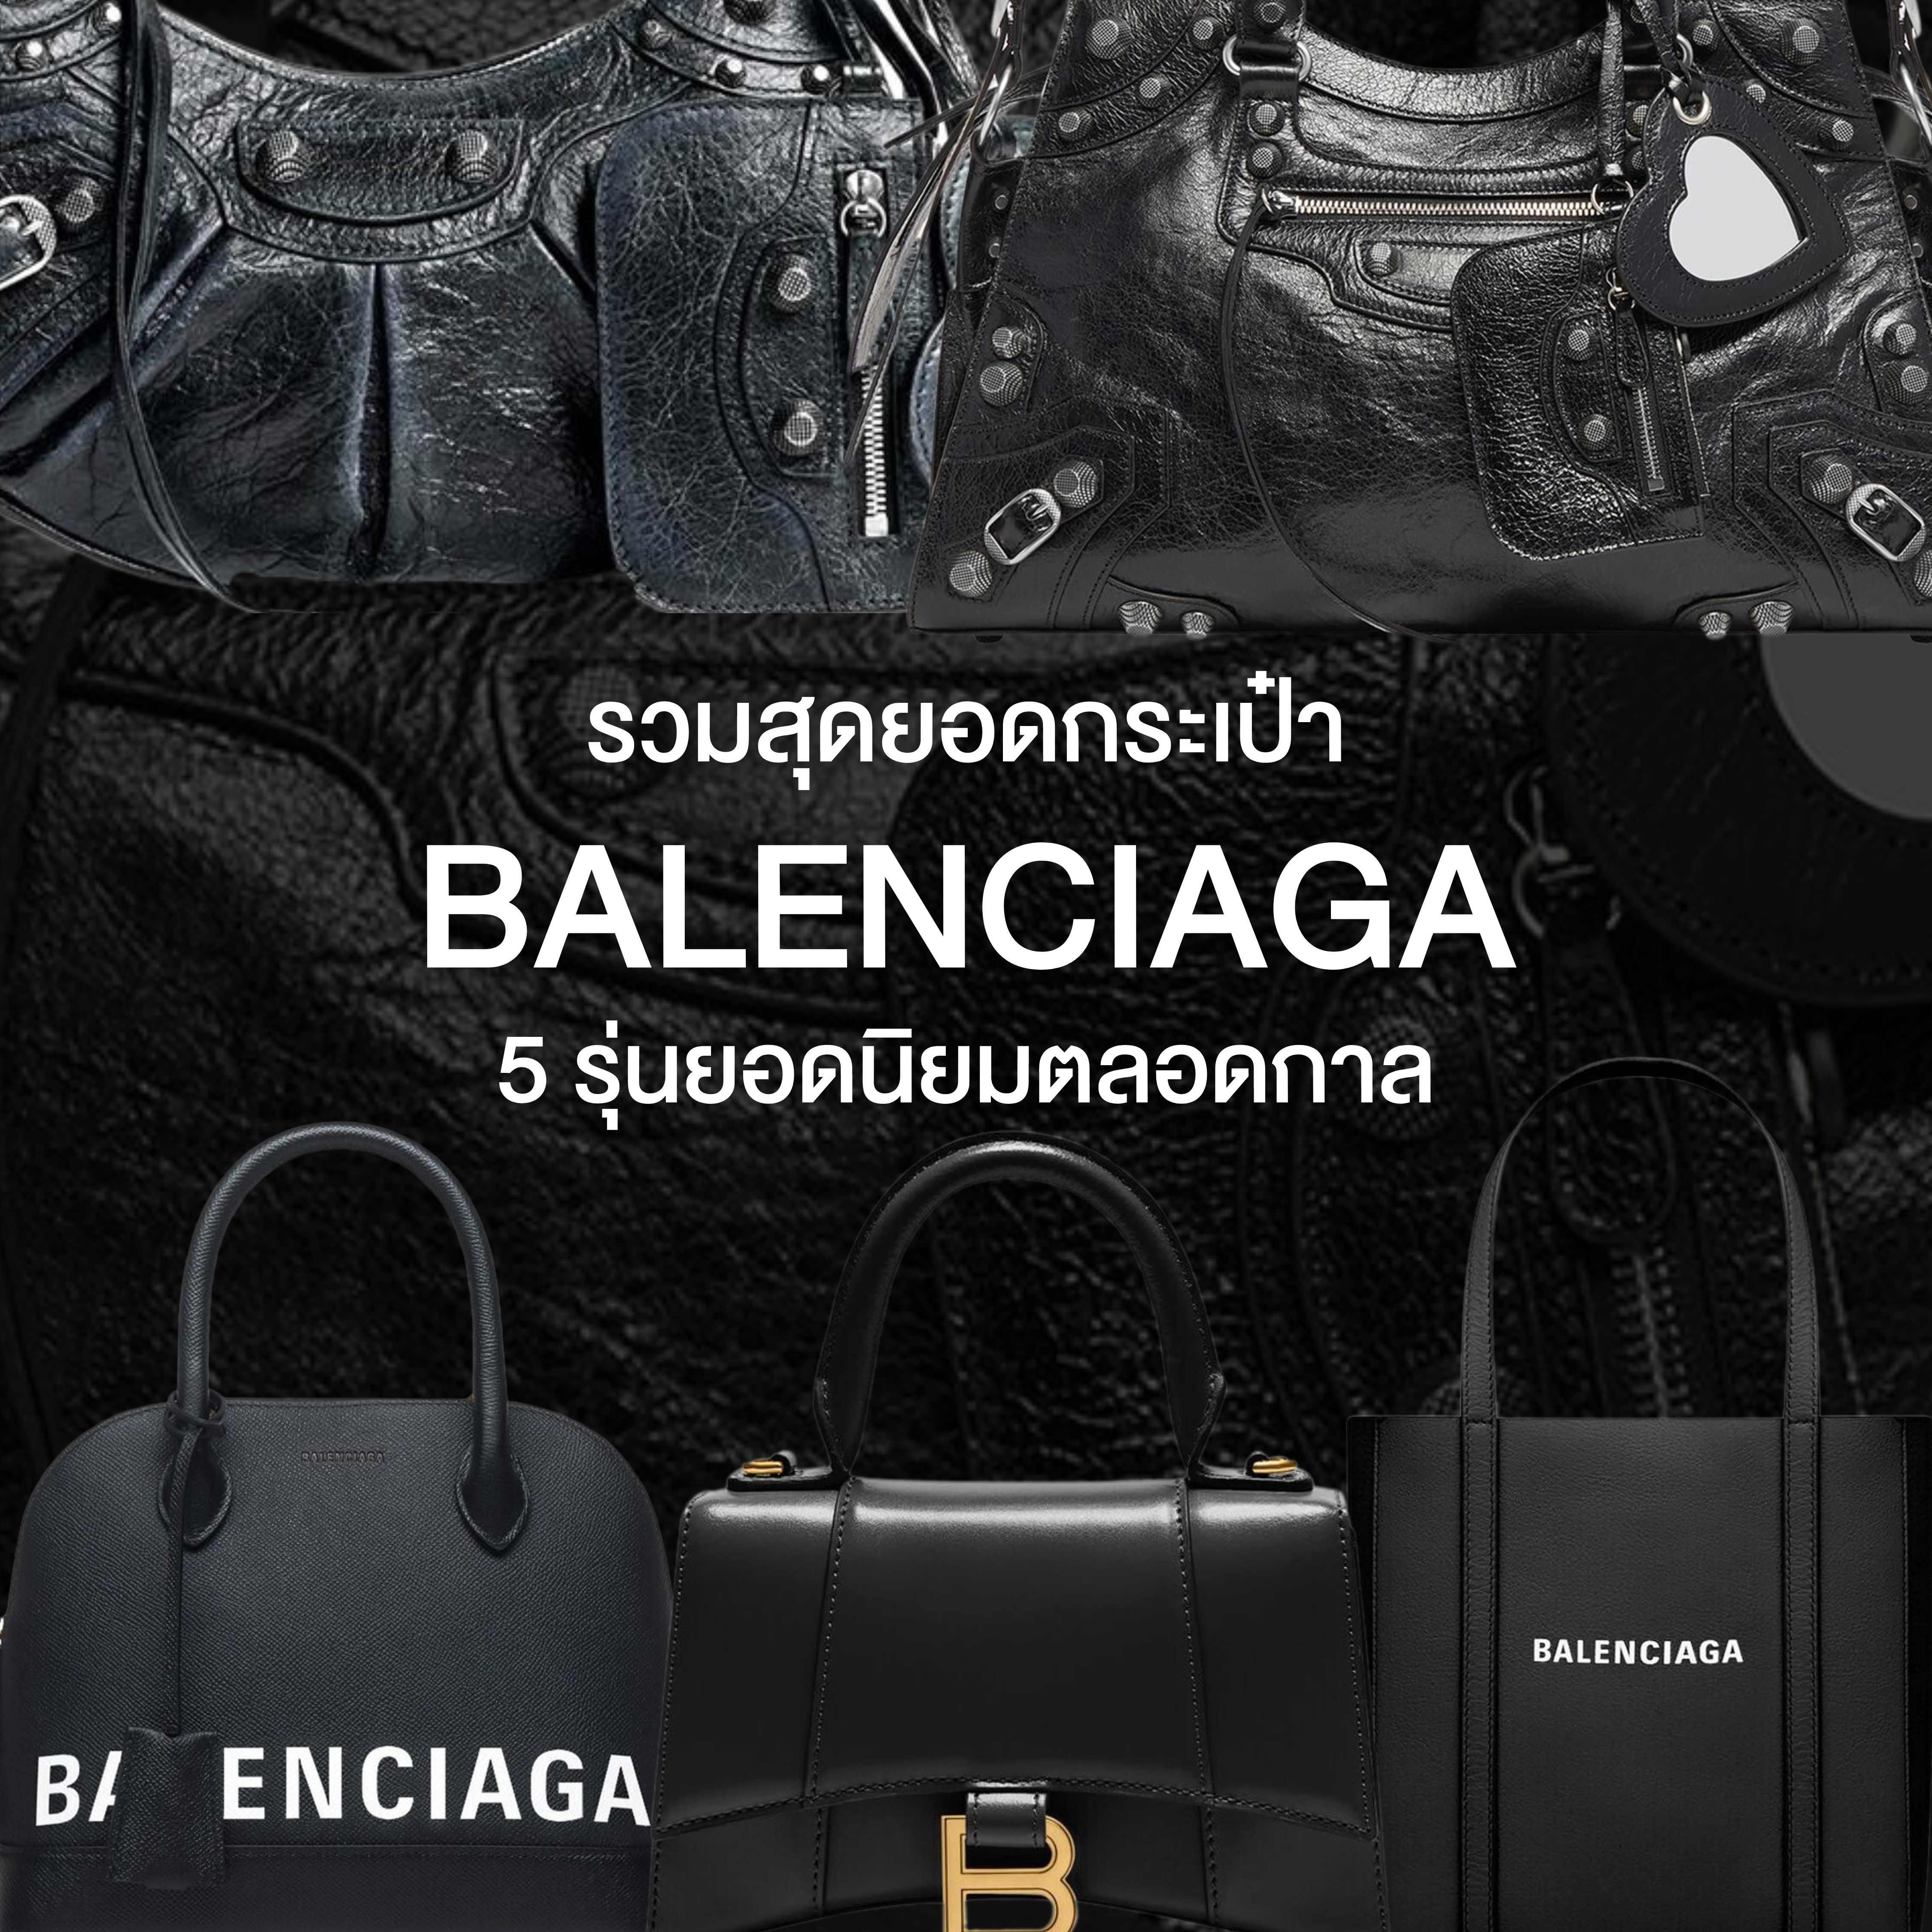 รวมสุดยอด กระเป๋า Balenciaga 5 รุ่นยอดนิยมตลอดกาล